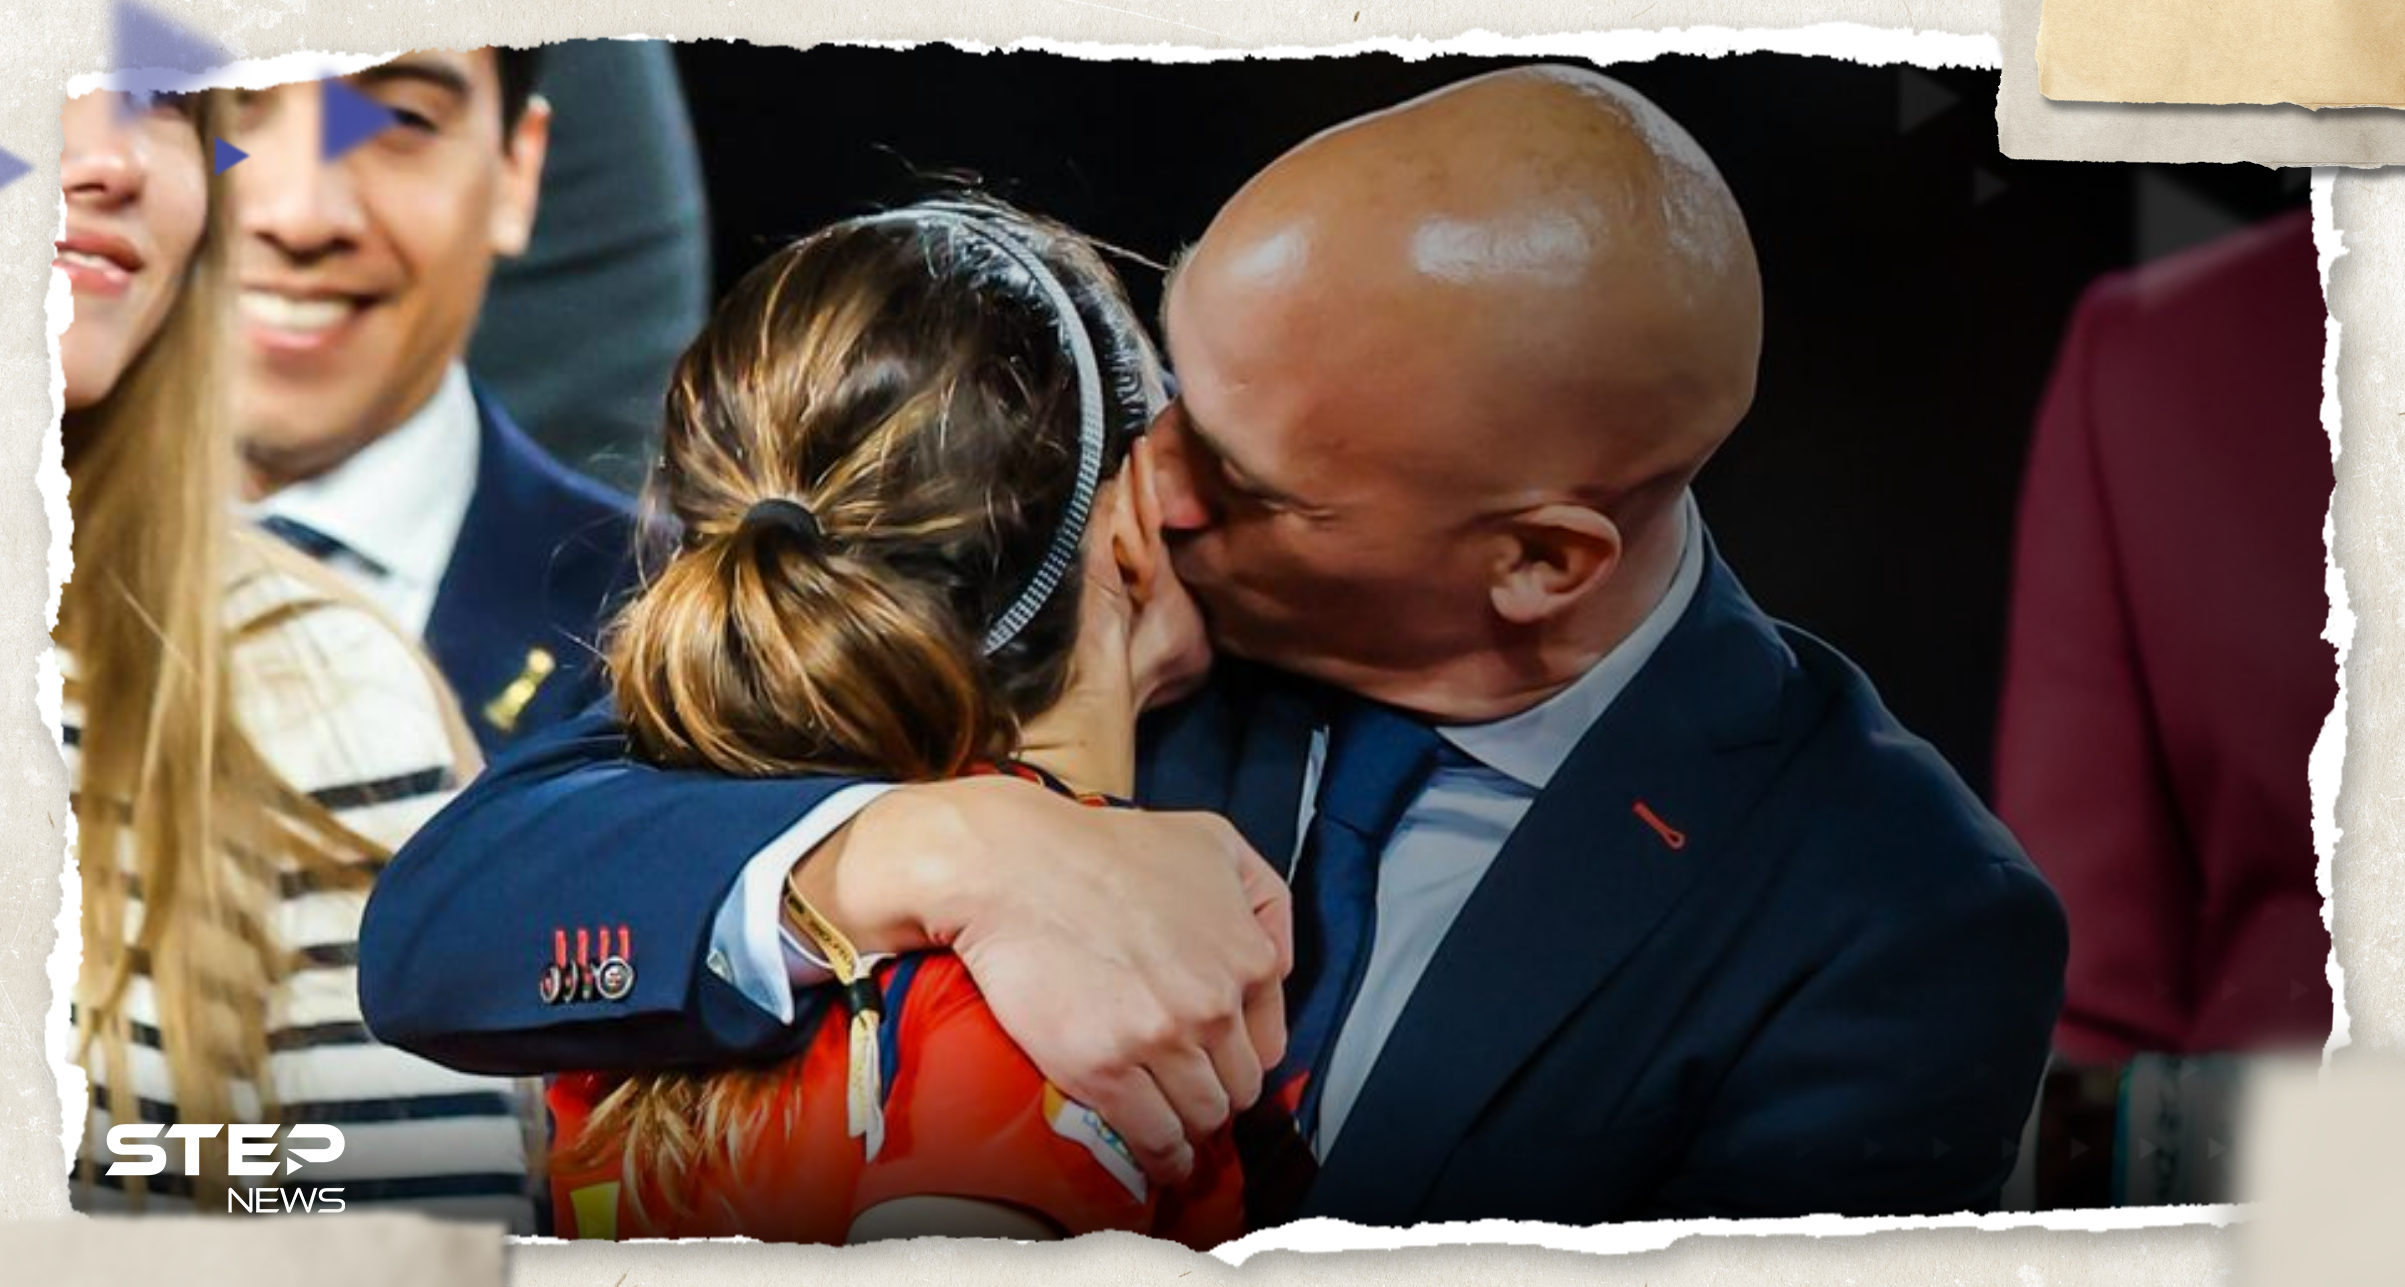 بعد "قبلته الشهيرة".. رئيس الاتحاد الإسباني لكرة القدم يستقيل "لأجل بناته"